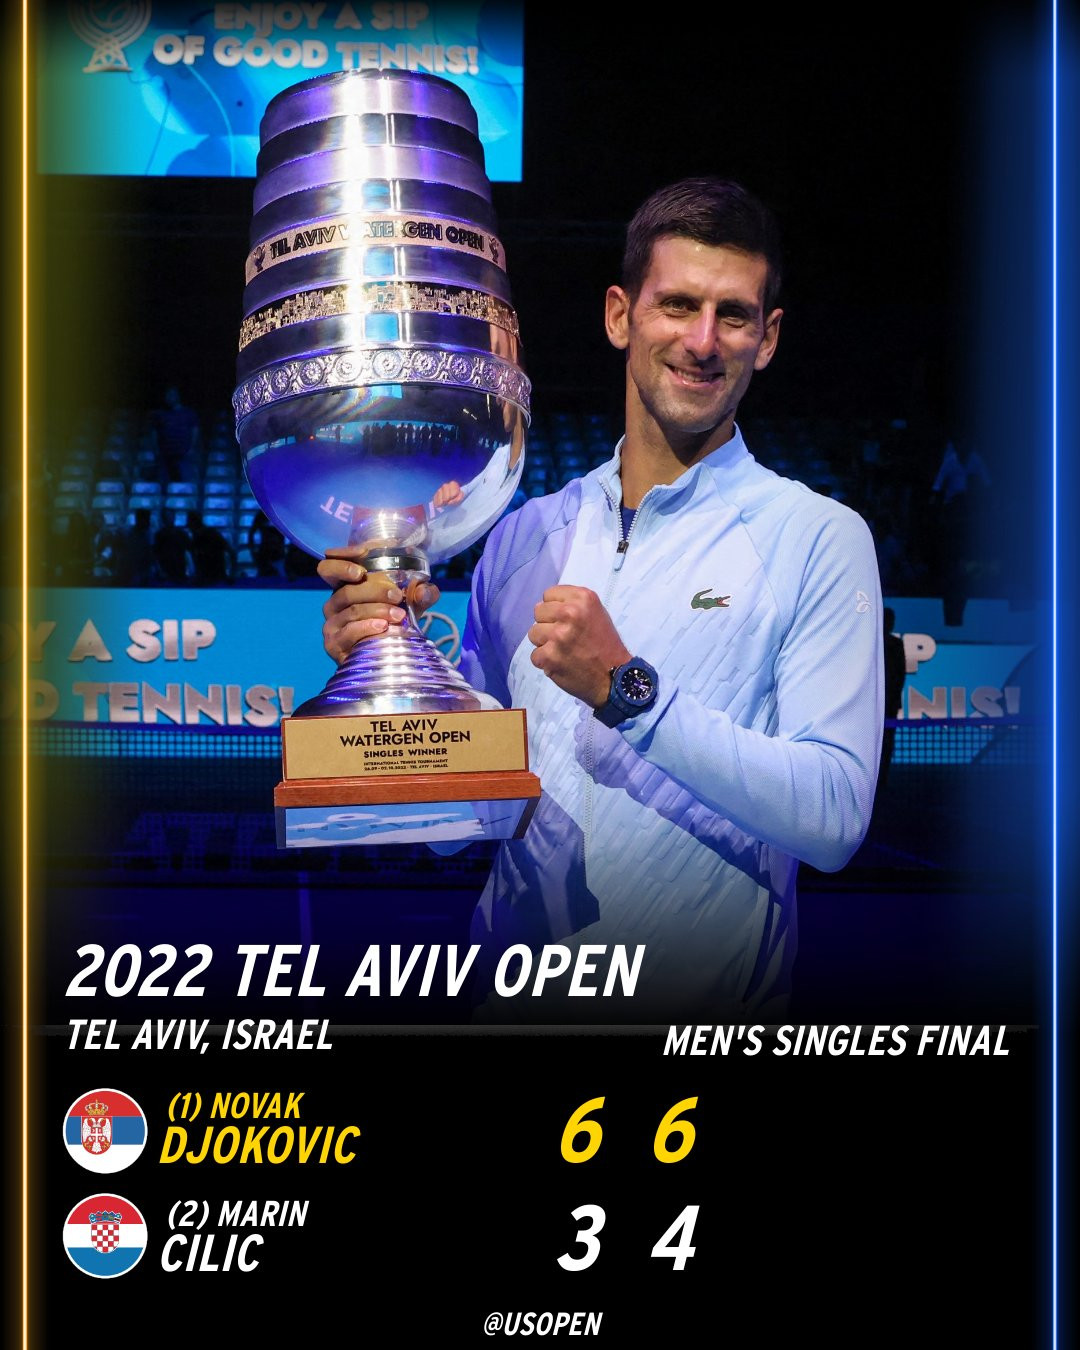 Đây là chiến thắng thứ 19 của Djokovic trong 21 lần gặp Cilic